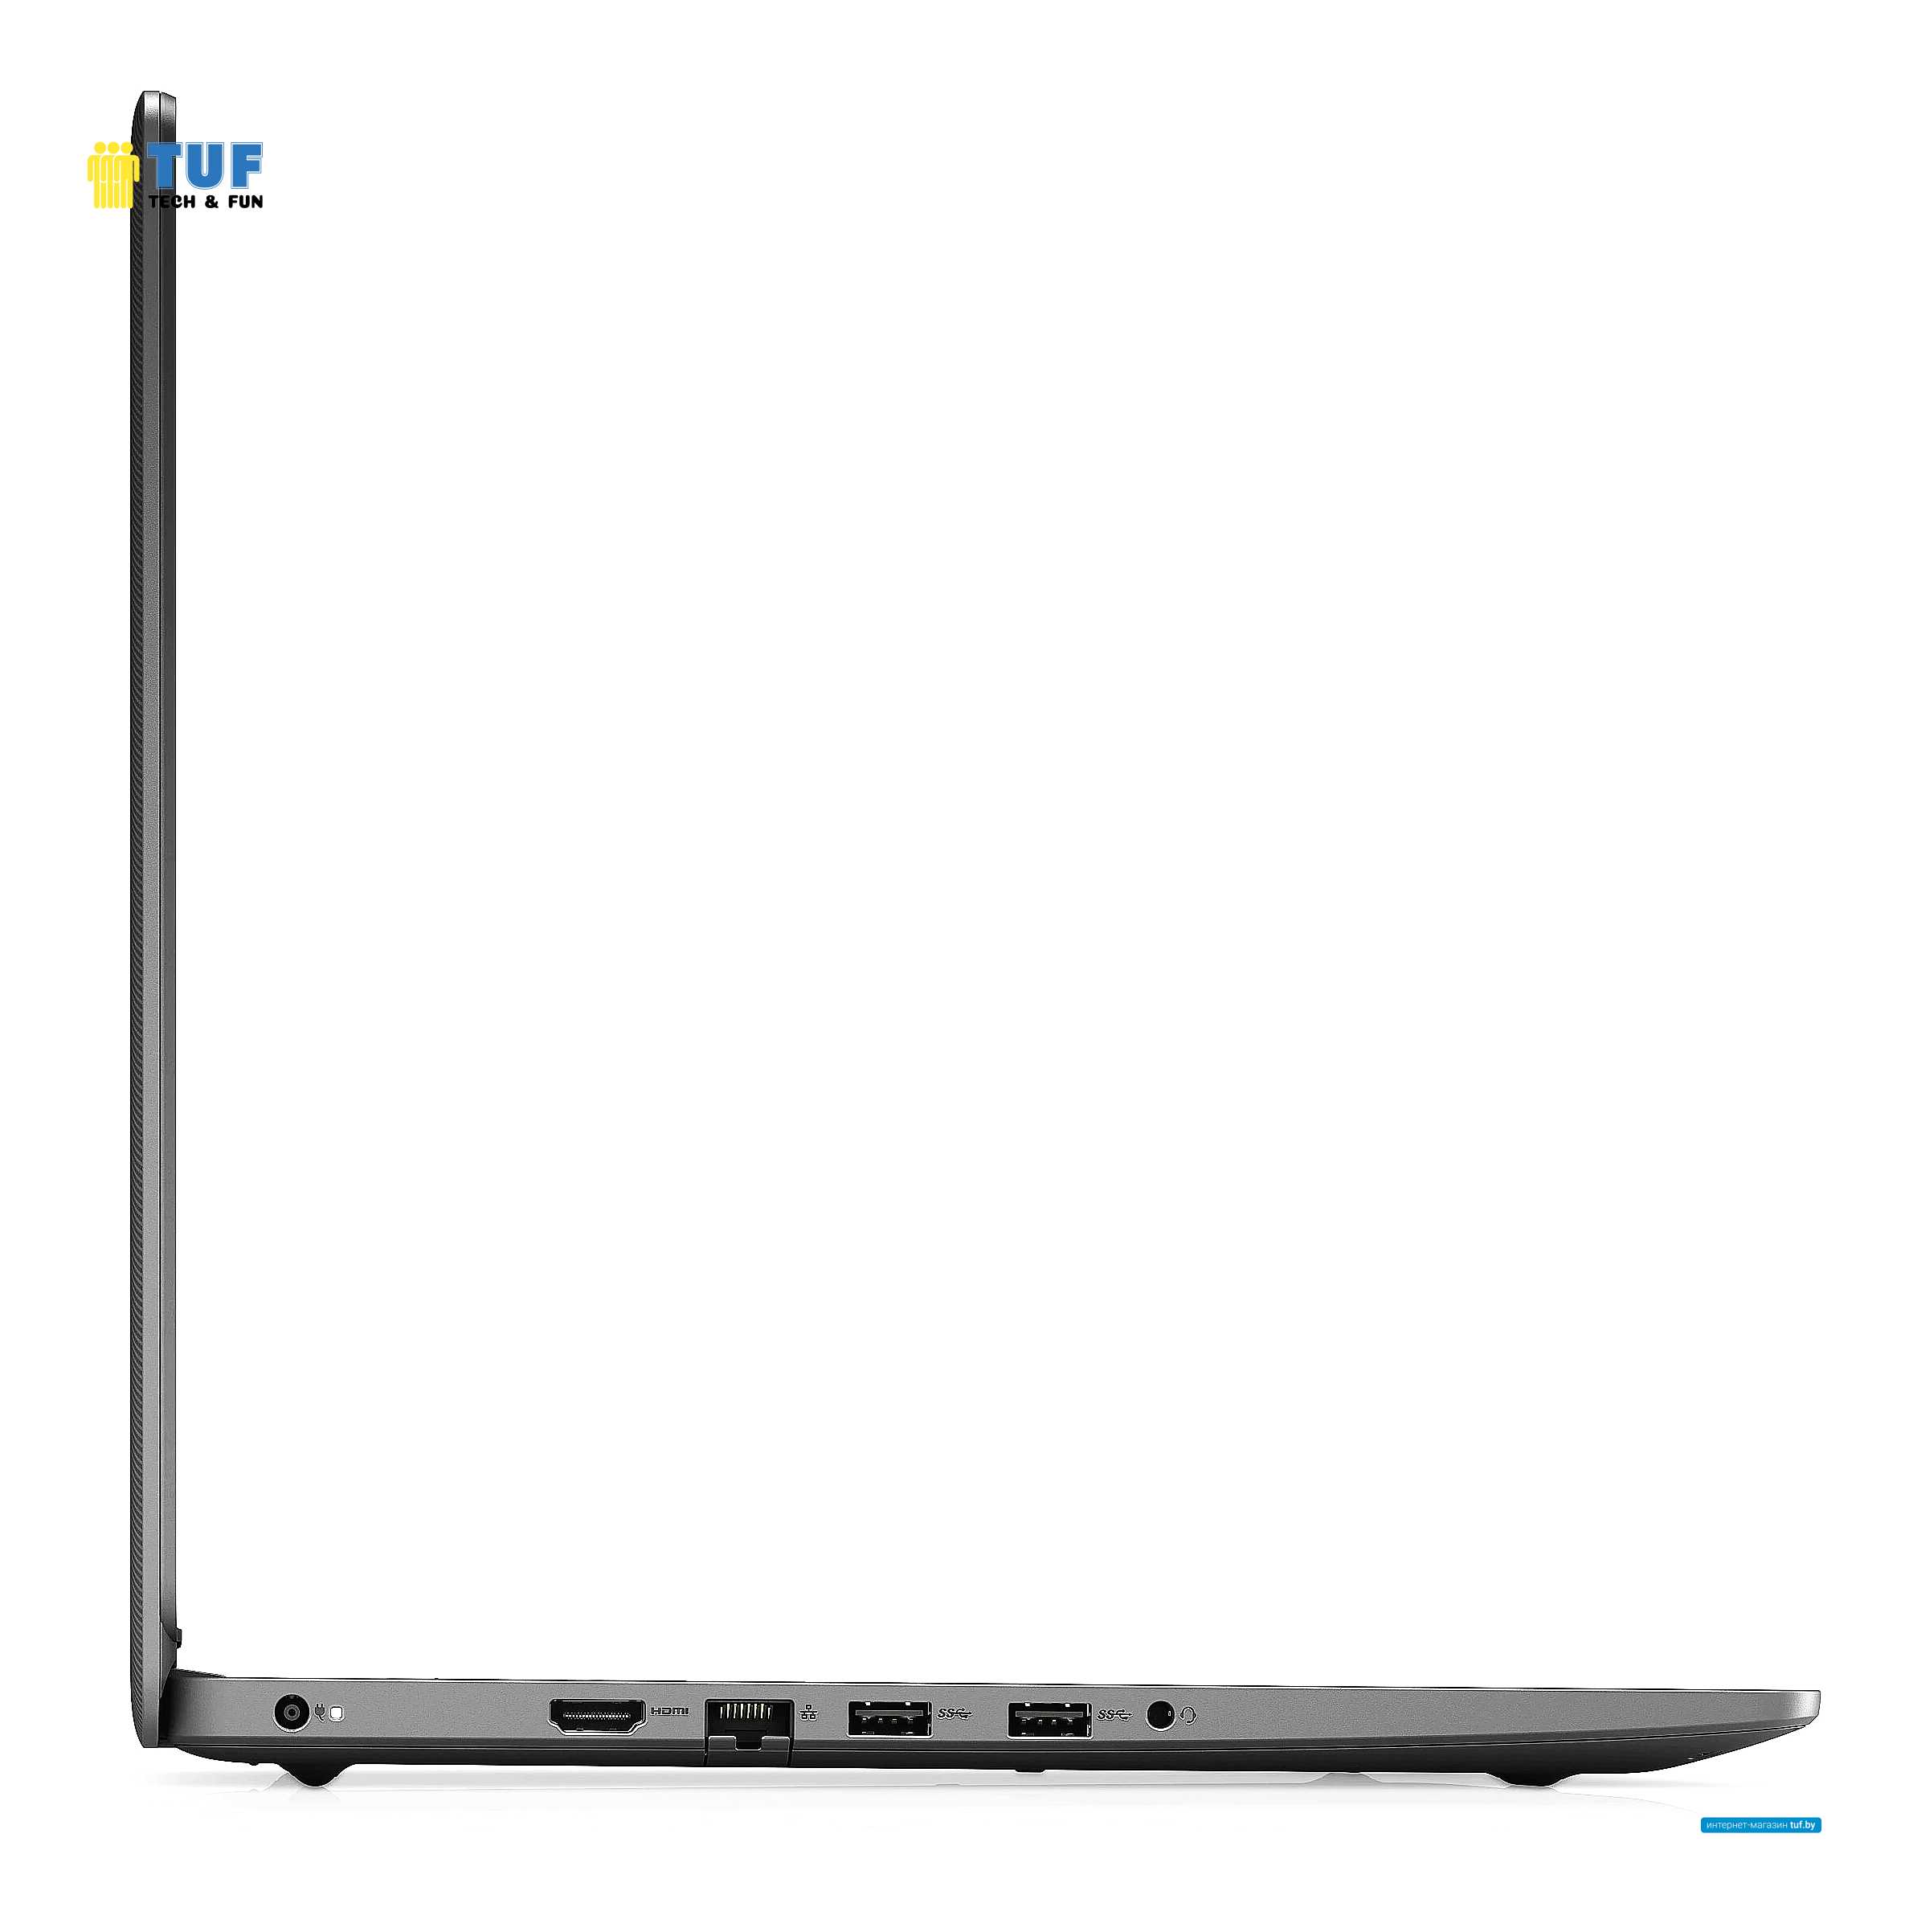 Ноутбук Dell Vostro 15 3500-6206